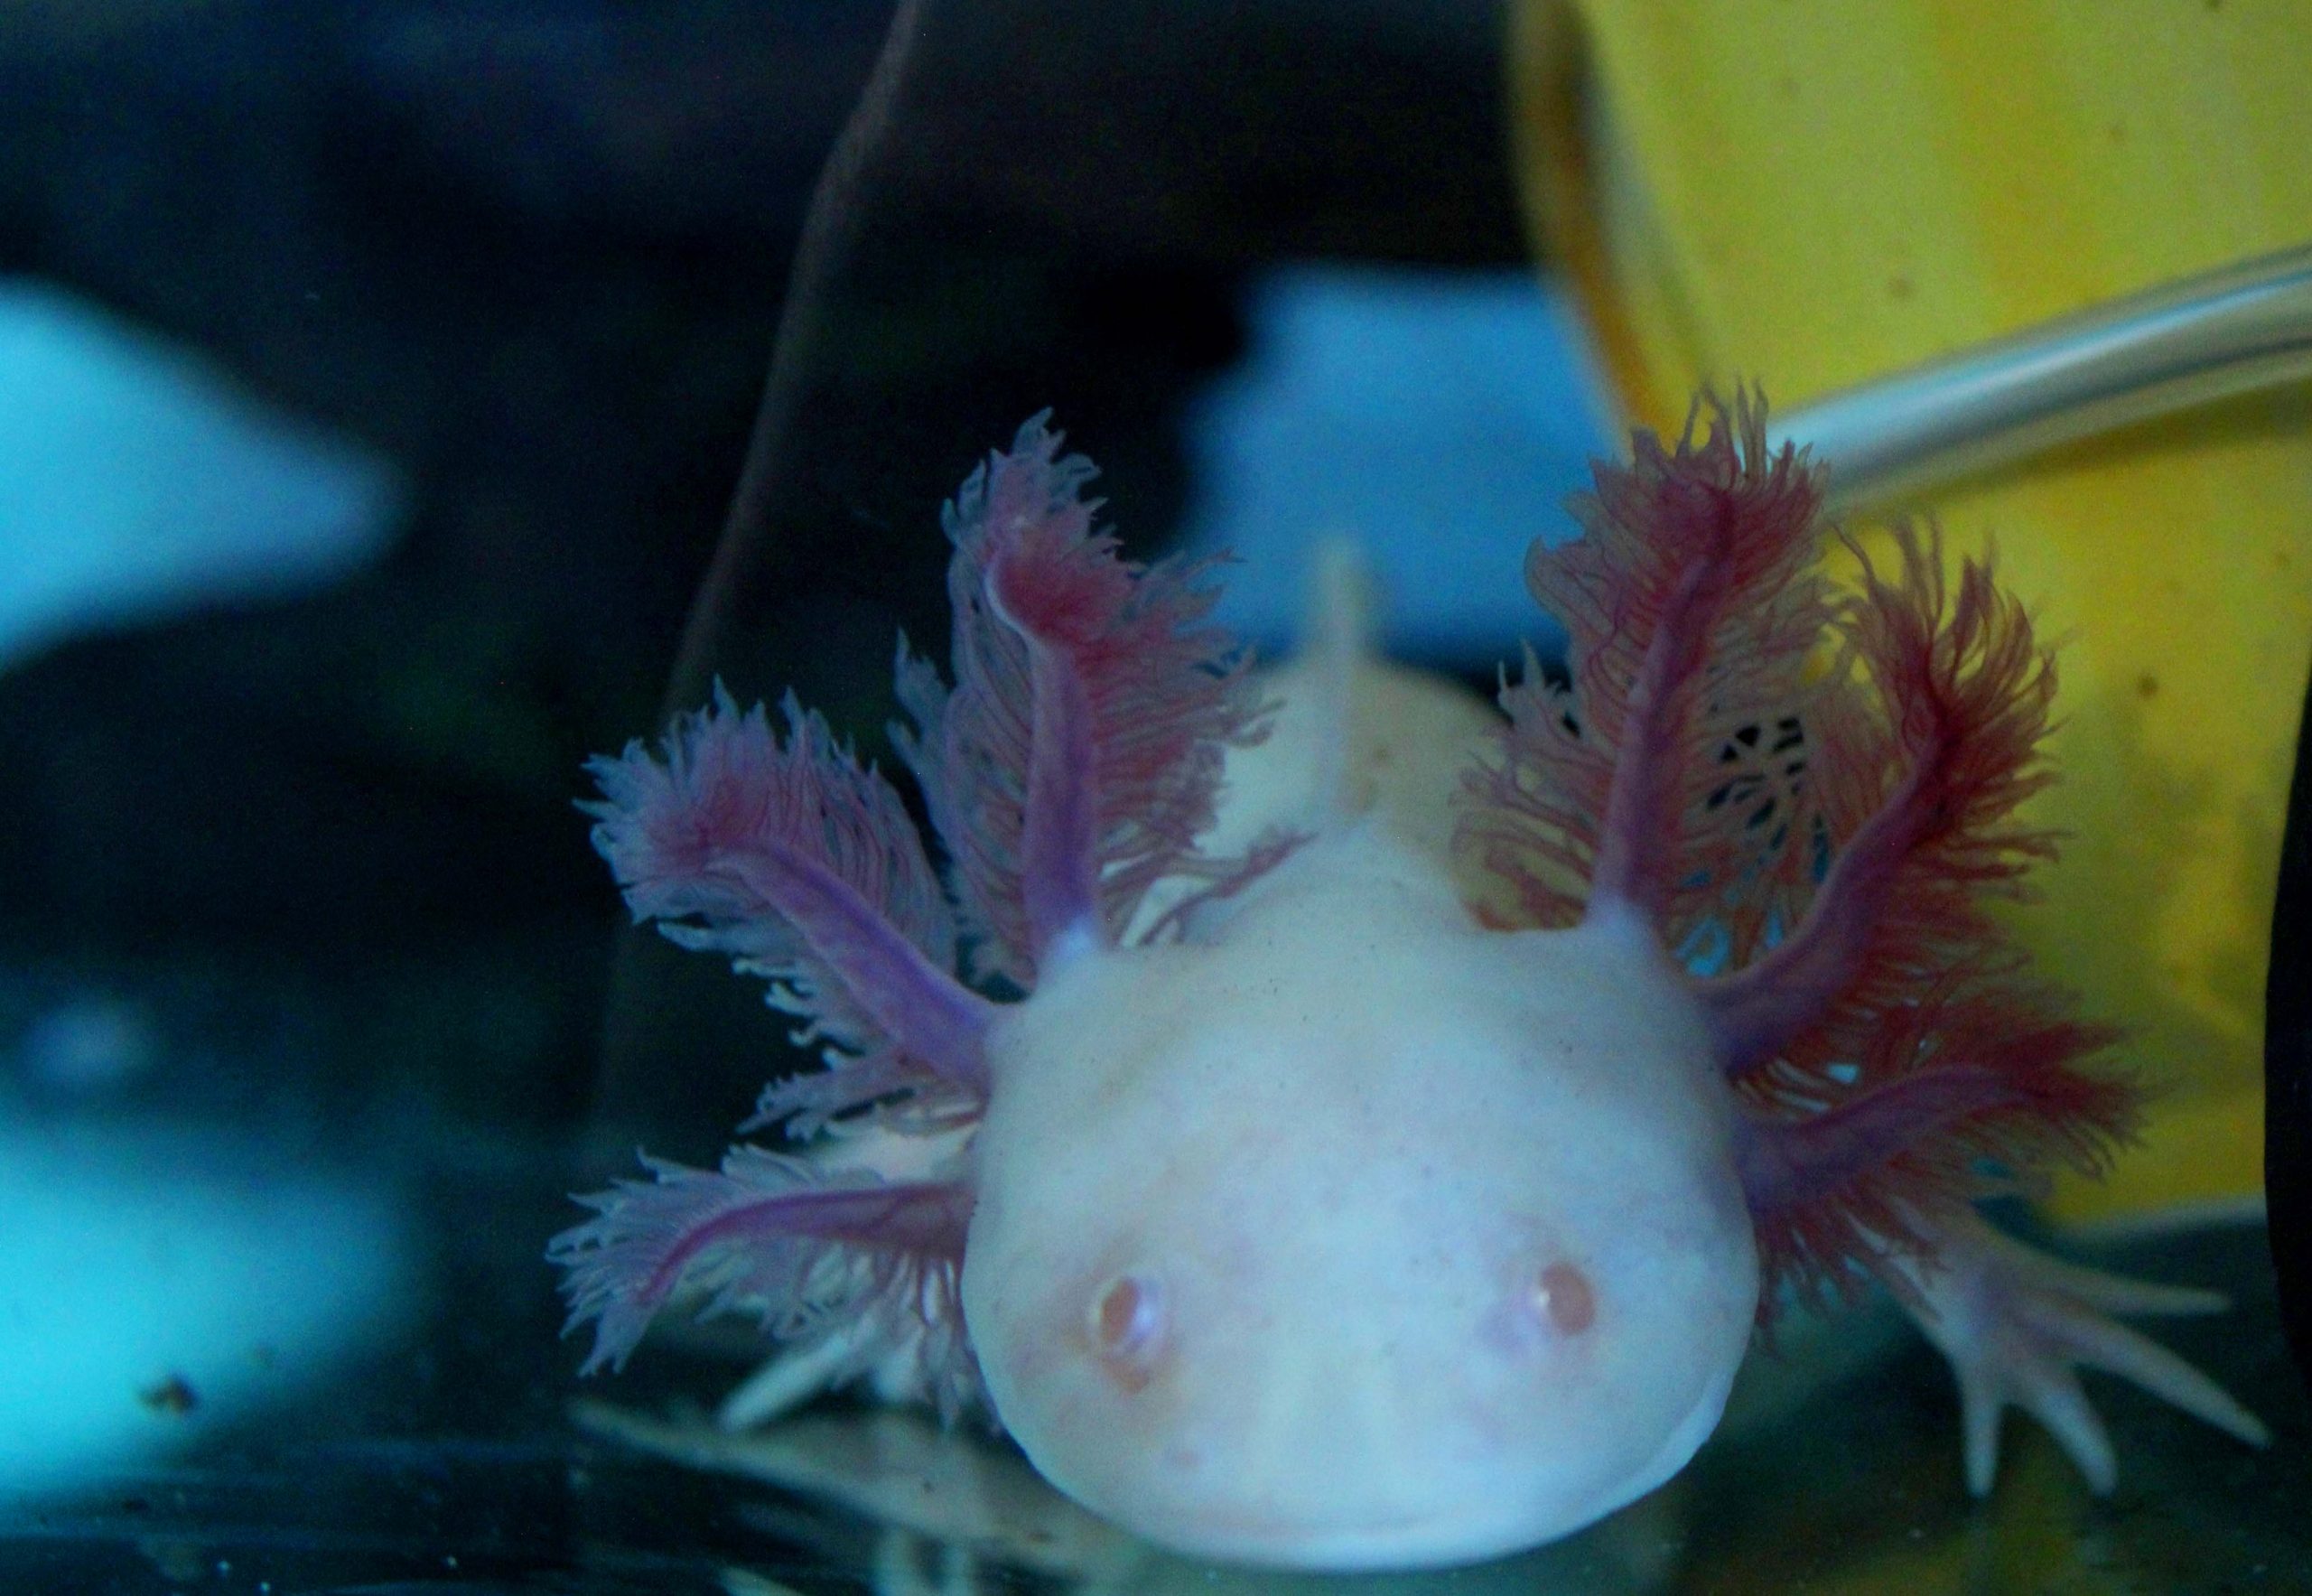 An albino axolotl